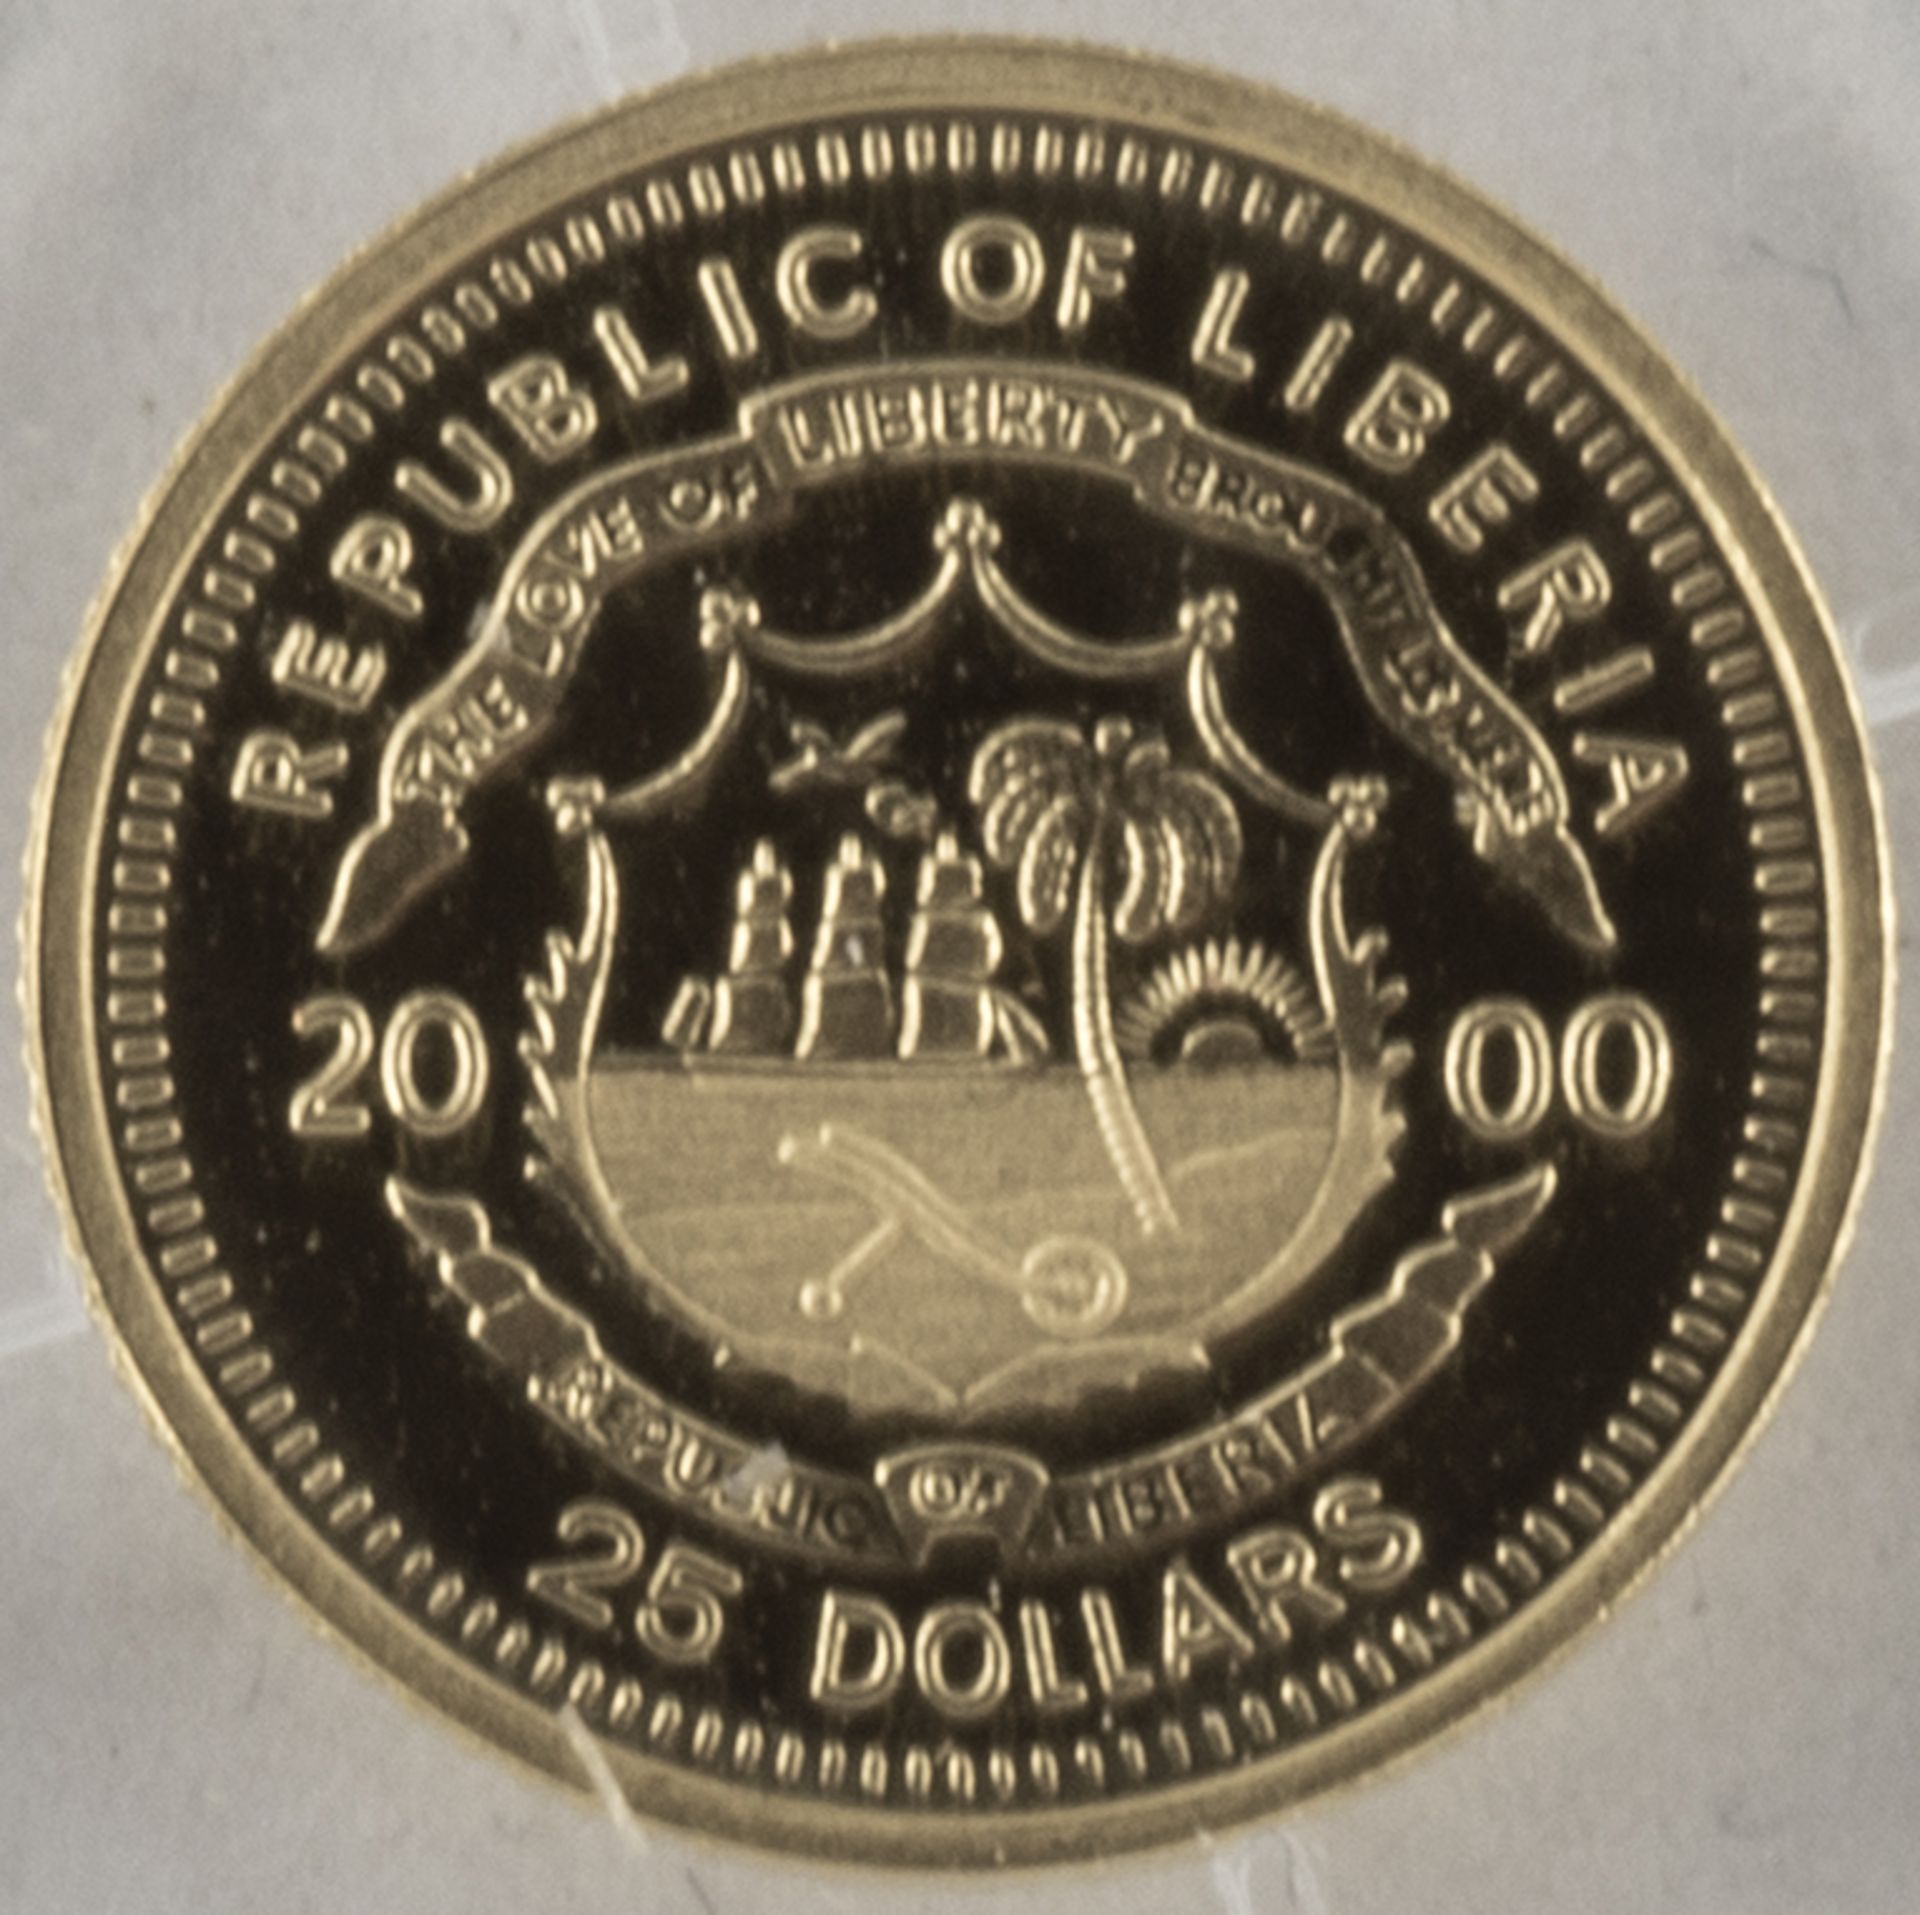 Liberia 2001, 25.- Dollar - Goldmünze "Julius Caesar". Gold 999. Gewicht: 0,73 g. Durchmesser: 11 - Image 2 of 2